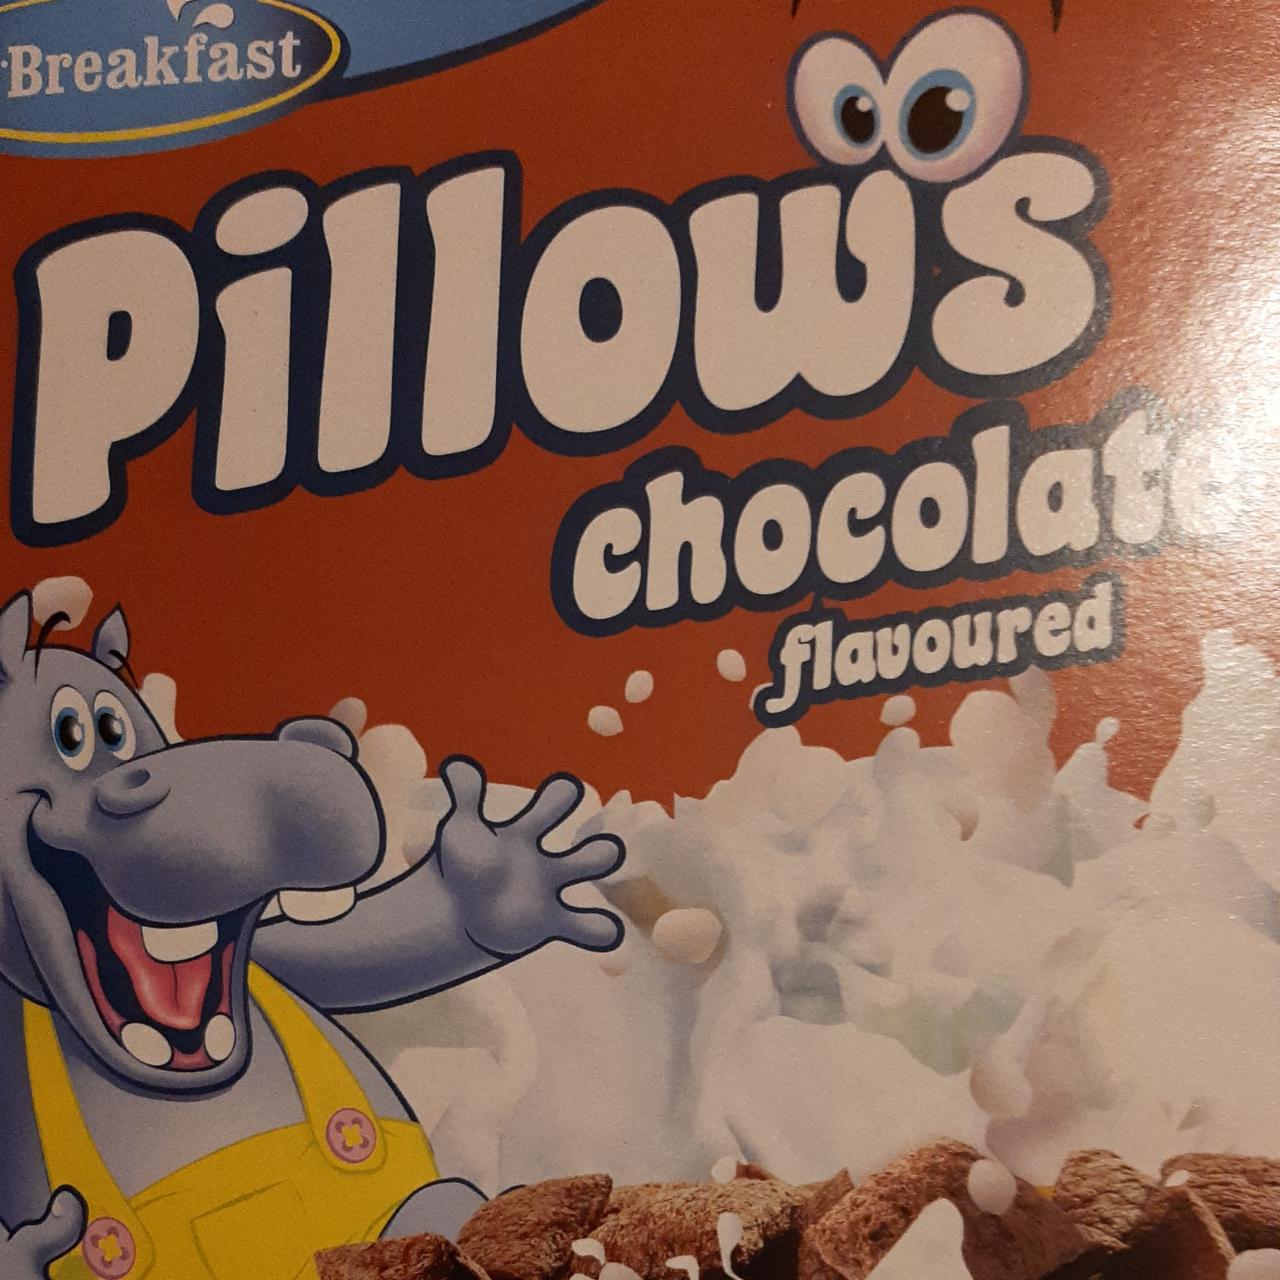 Zdjęcia - Pillows chocolate flavoured Mr Breakfast